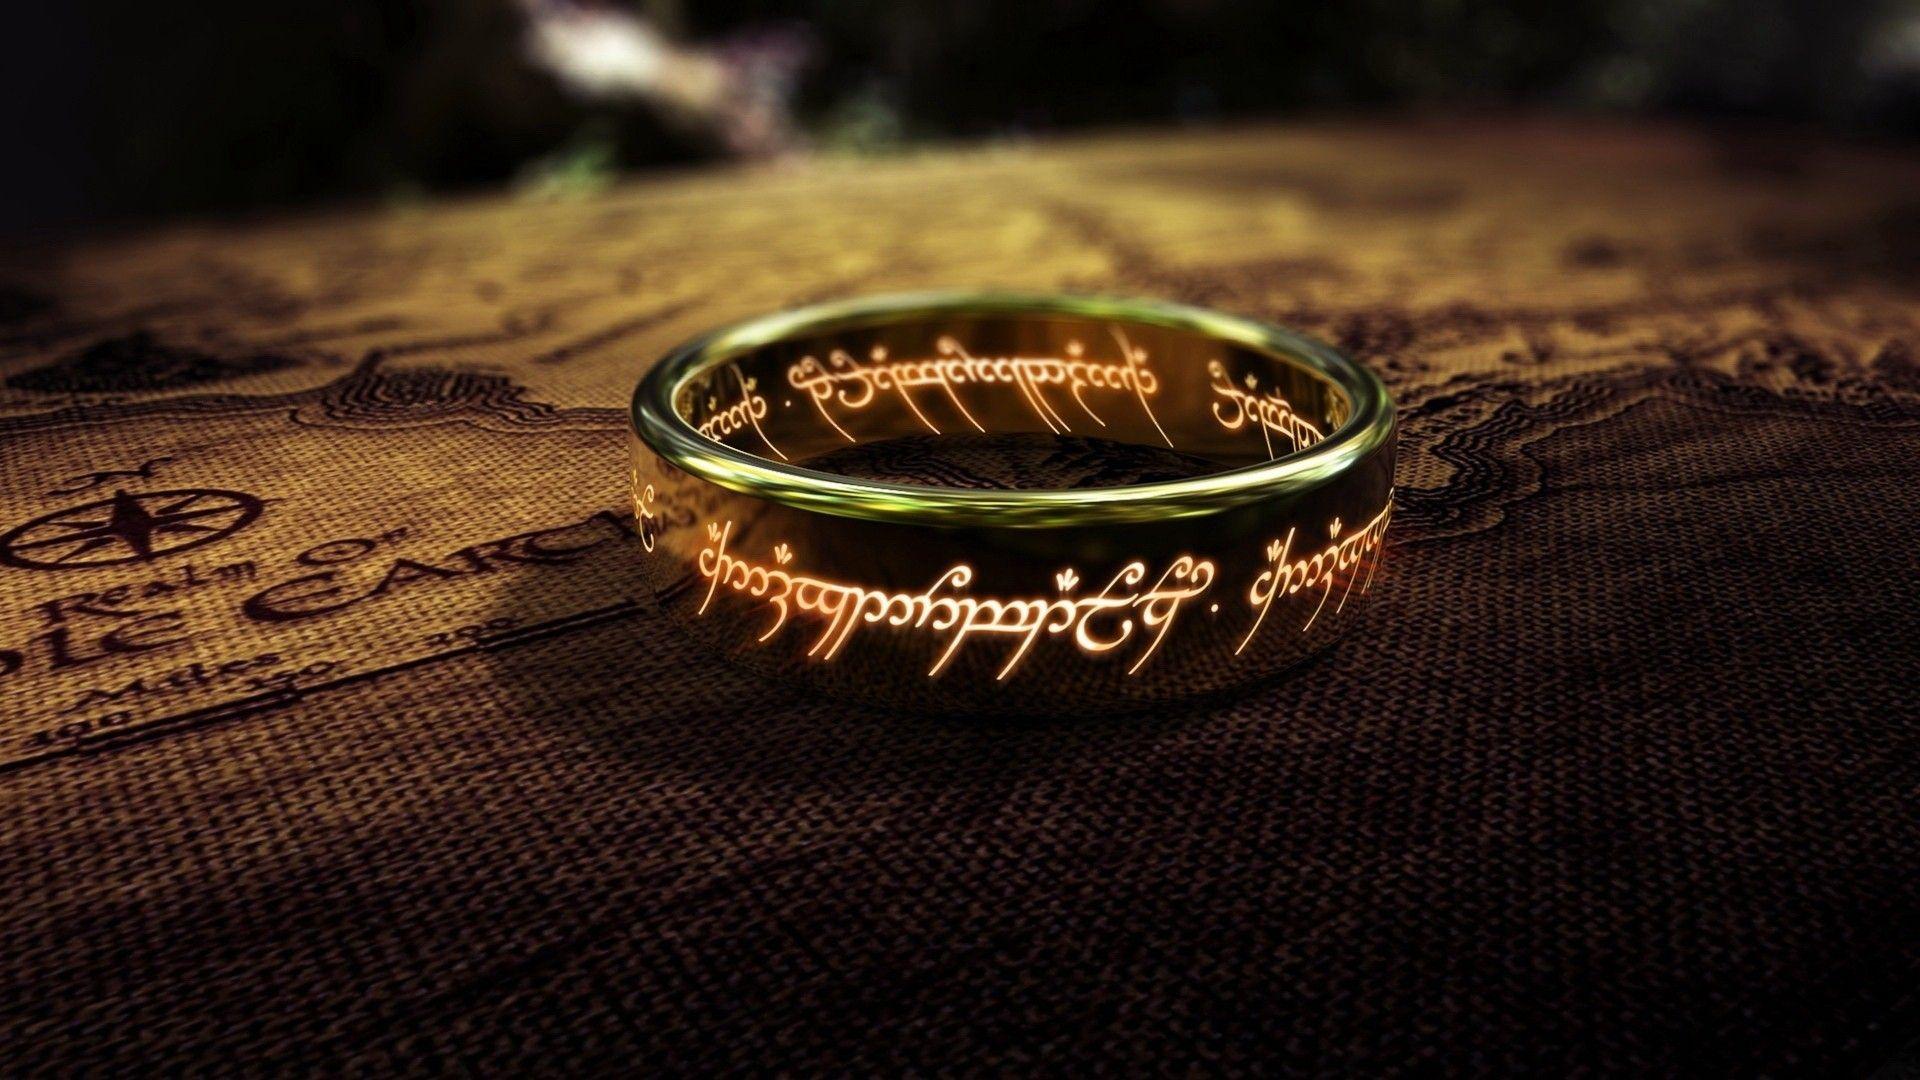 سال پیش بود که شاهکار فانتزی جی آر آر تولکین با نام ارباب حلقه ها (The Lord of the Rings) دستمایه آغاز فرانچایزی نمادین در تاریخ سینما شد.